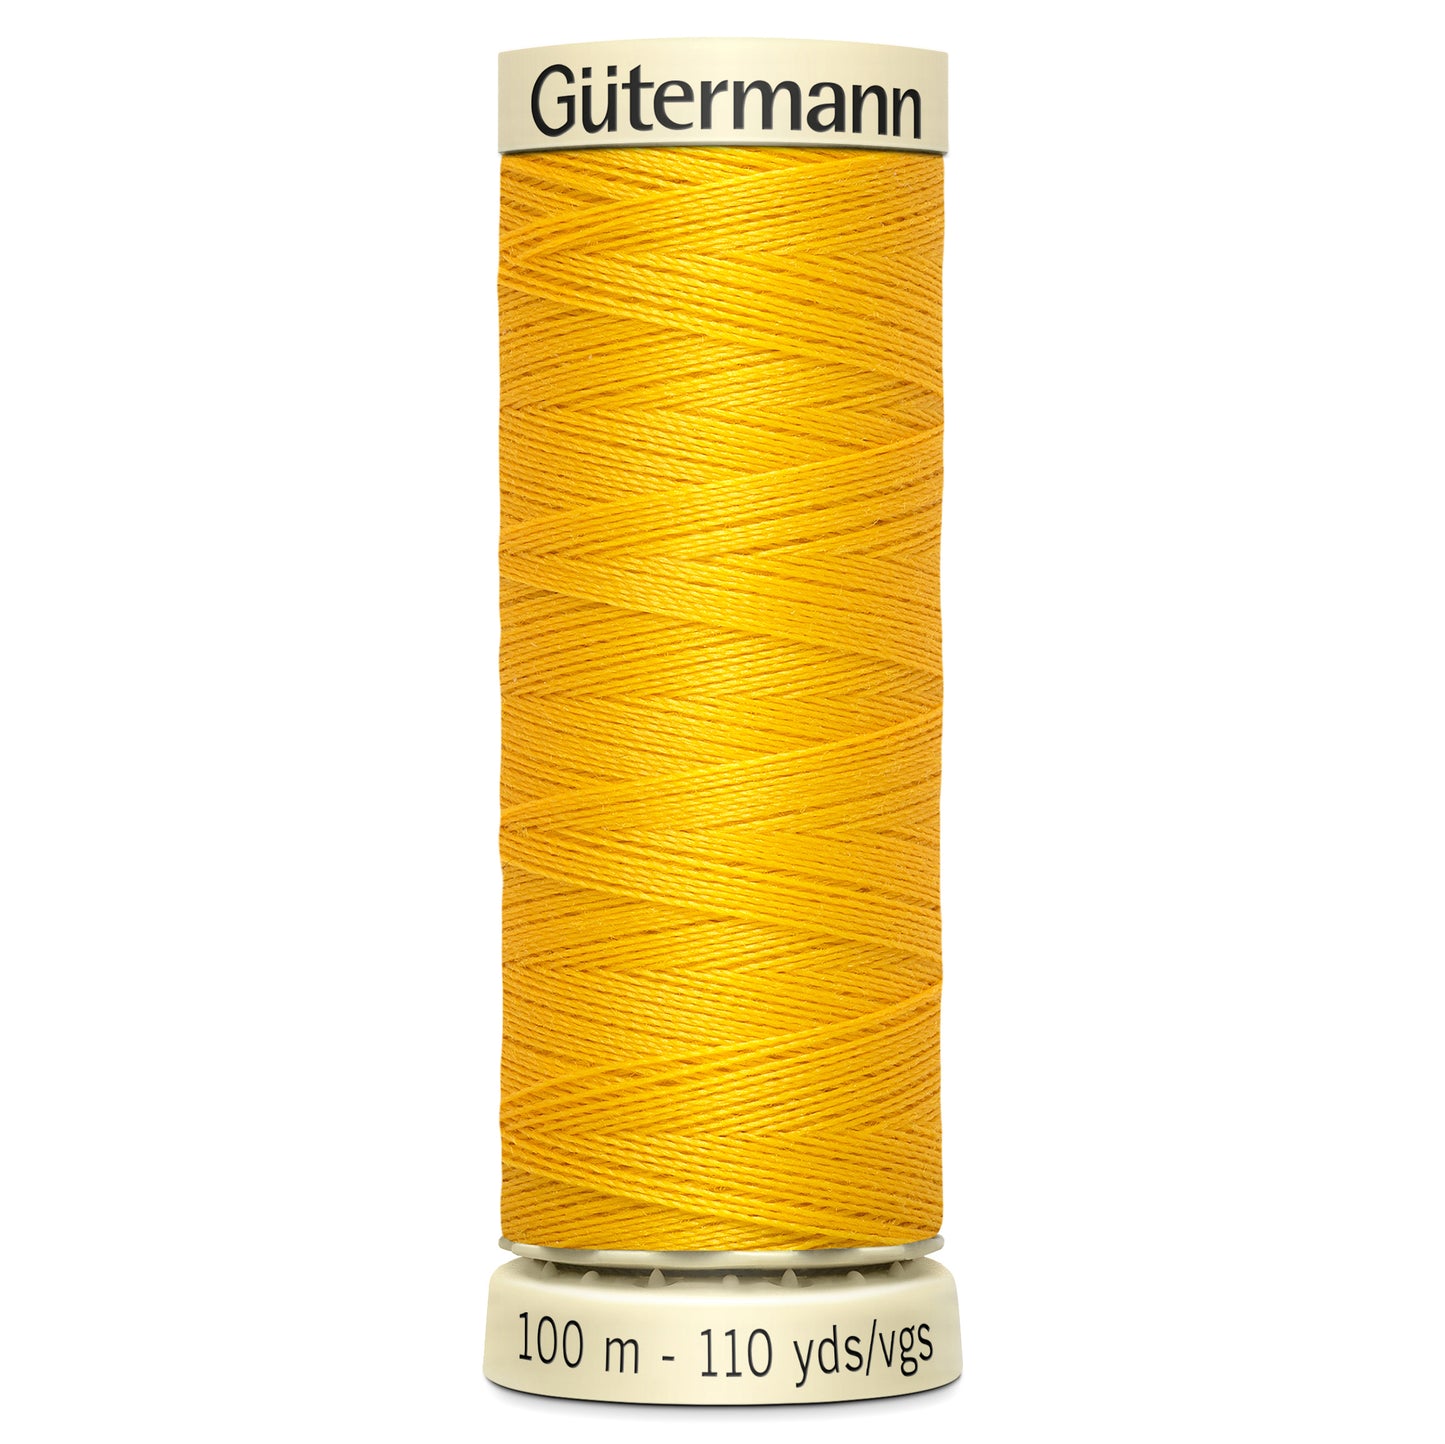 Shade 106 - Sew-All Thread: 100m - Gutermann